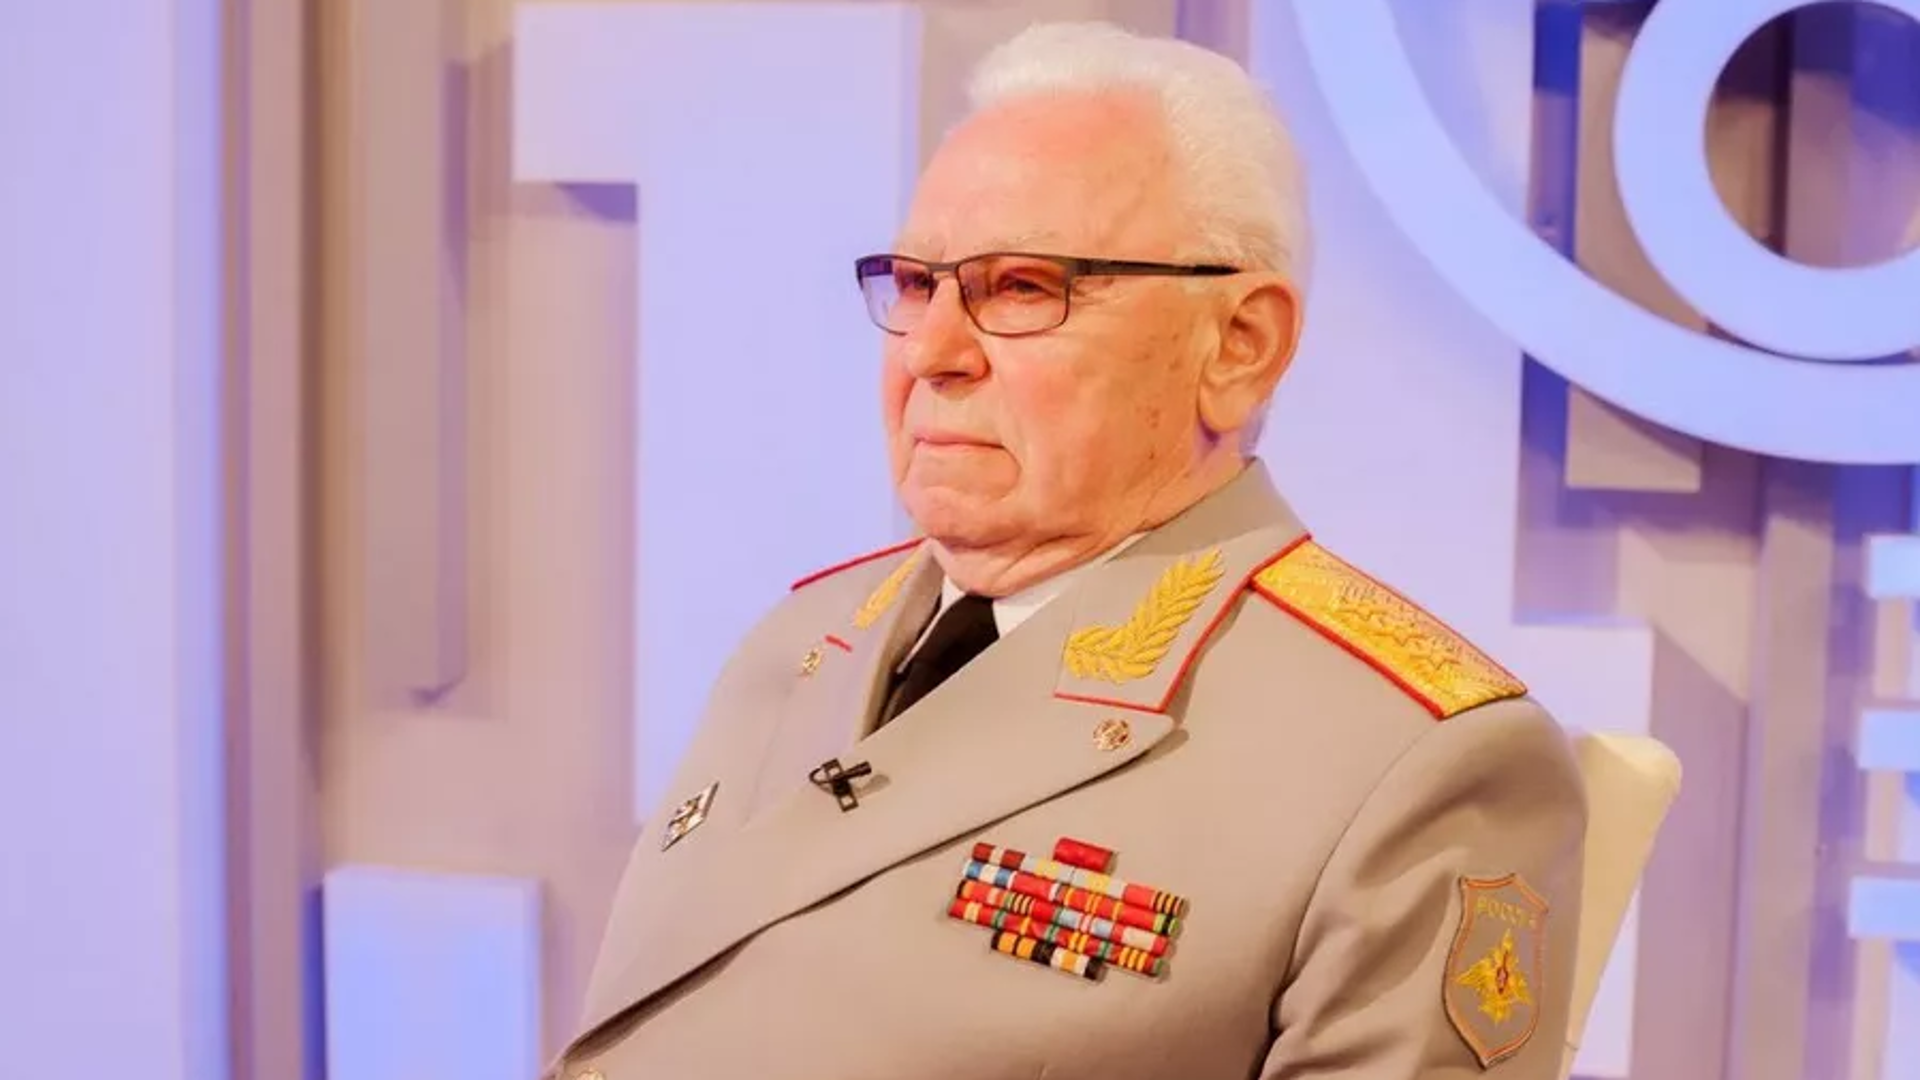 Генерал Ладыгин Федор Иванович